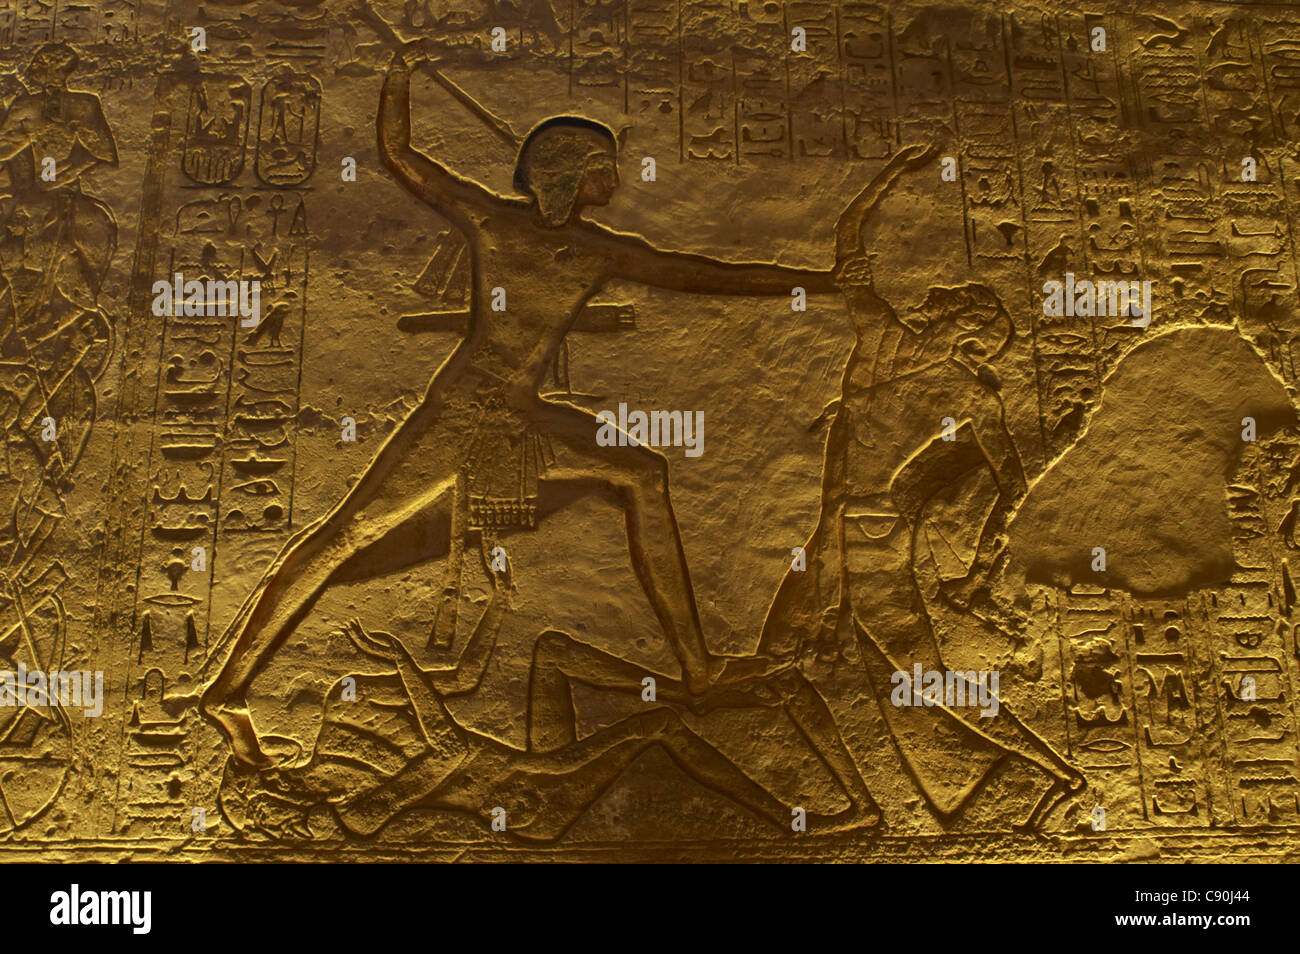 Arte Egizia Grande Tempio di Ramses II. Campagna militare. Il faraone Ramses II in lotta con un nemico. Abu Simbel. L'Egitto. Foto Stock